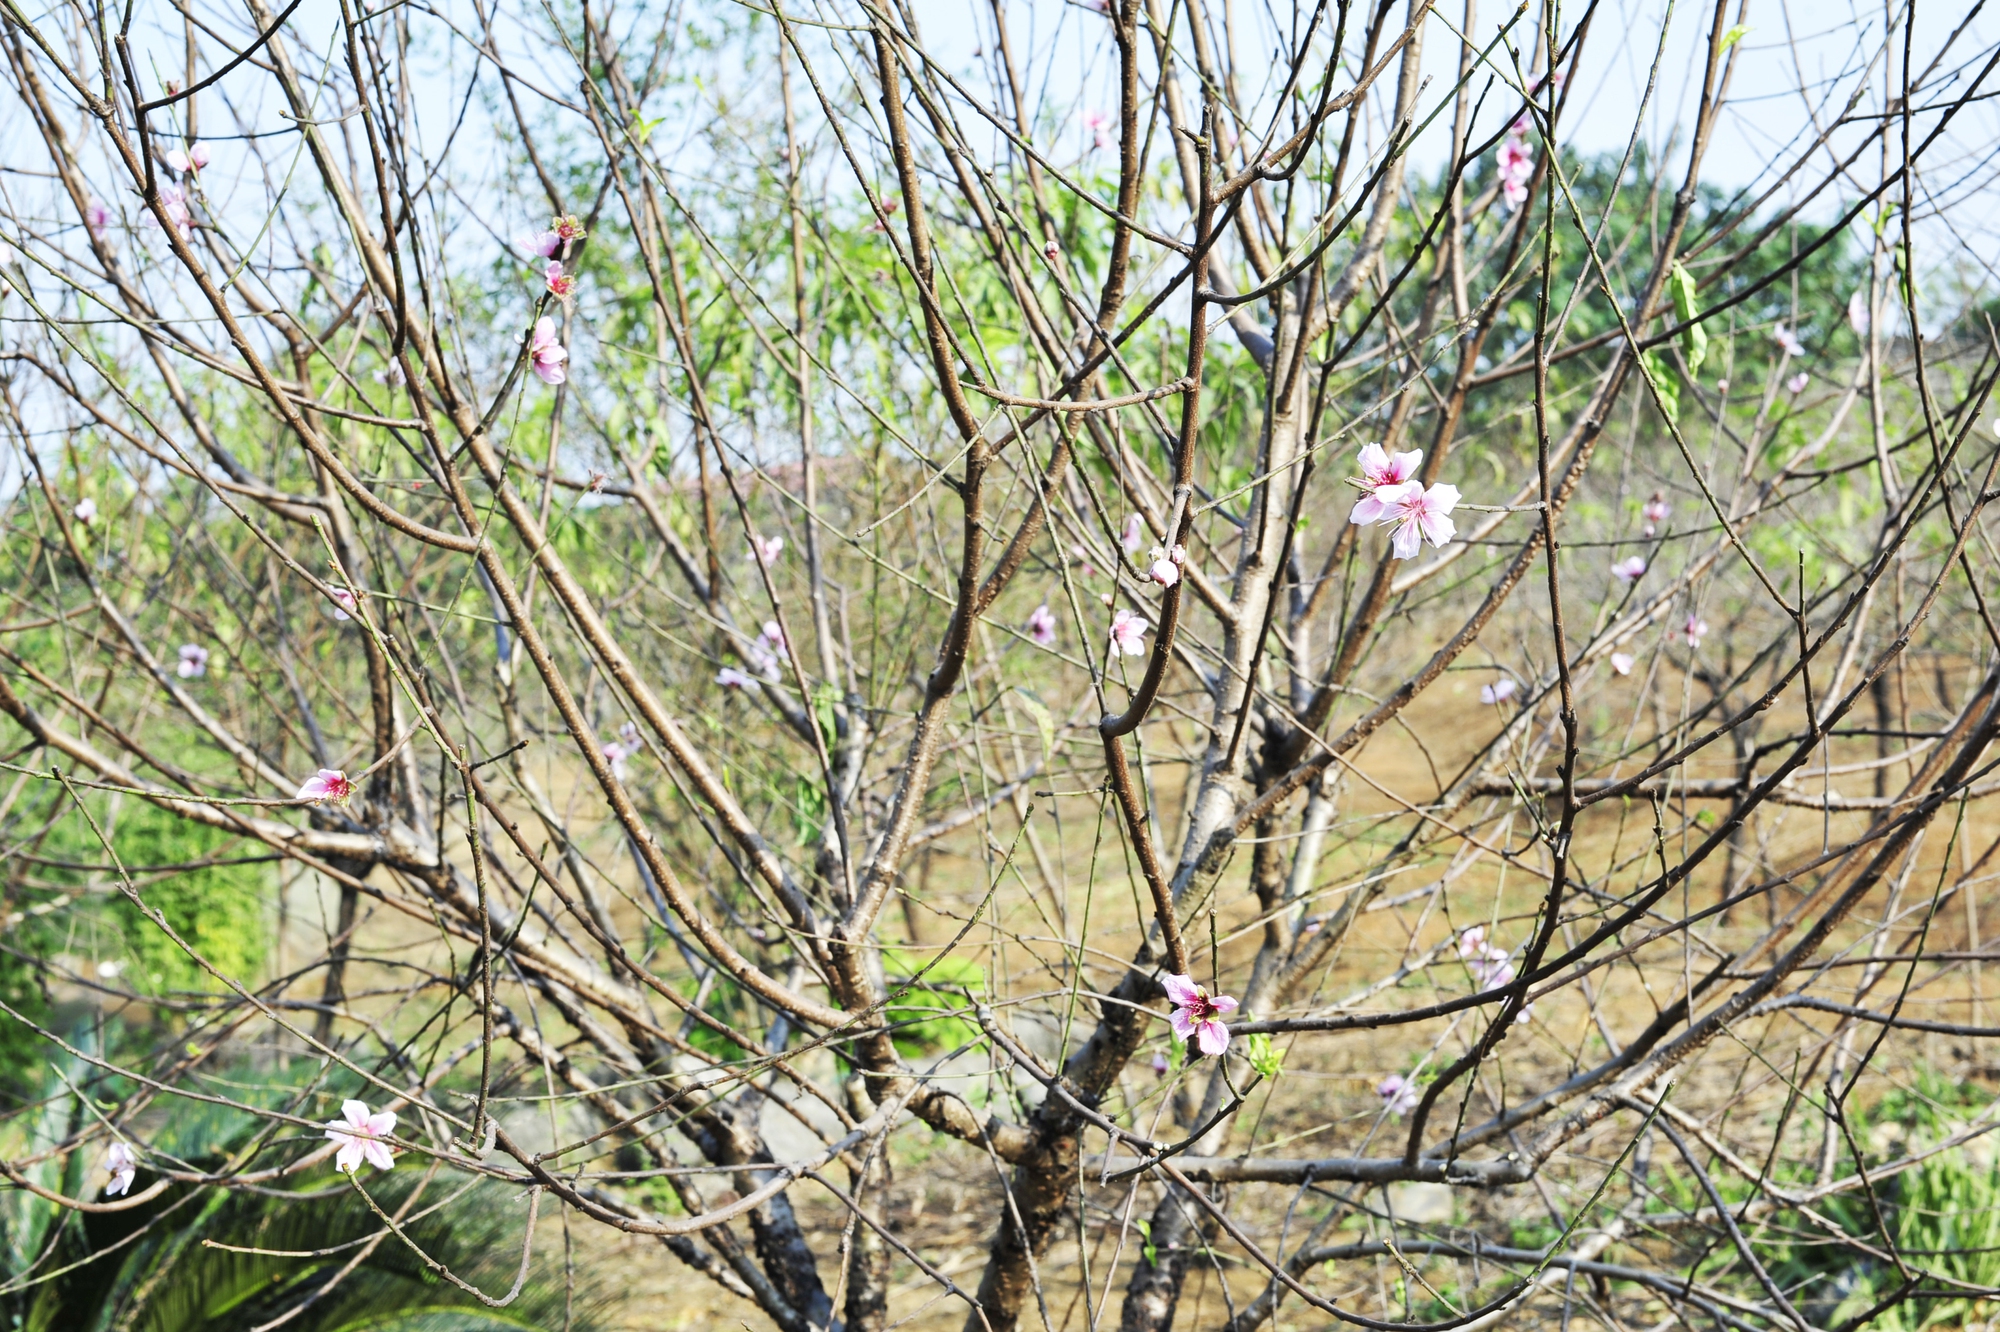 Hoa đào năm nay nở chậm, chủ vườn tư vấn cho khách cách chọn cây ưng ý chơi Tết - Ảnh 10.